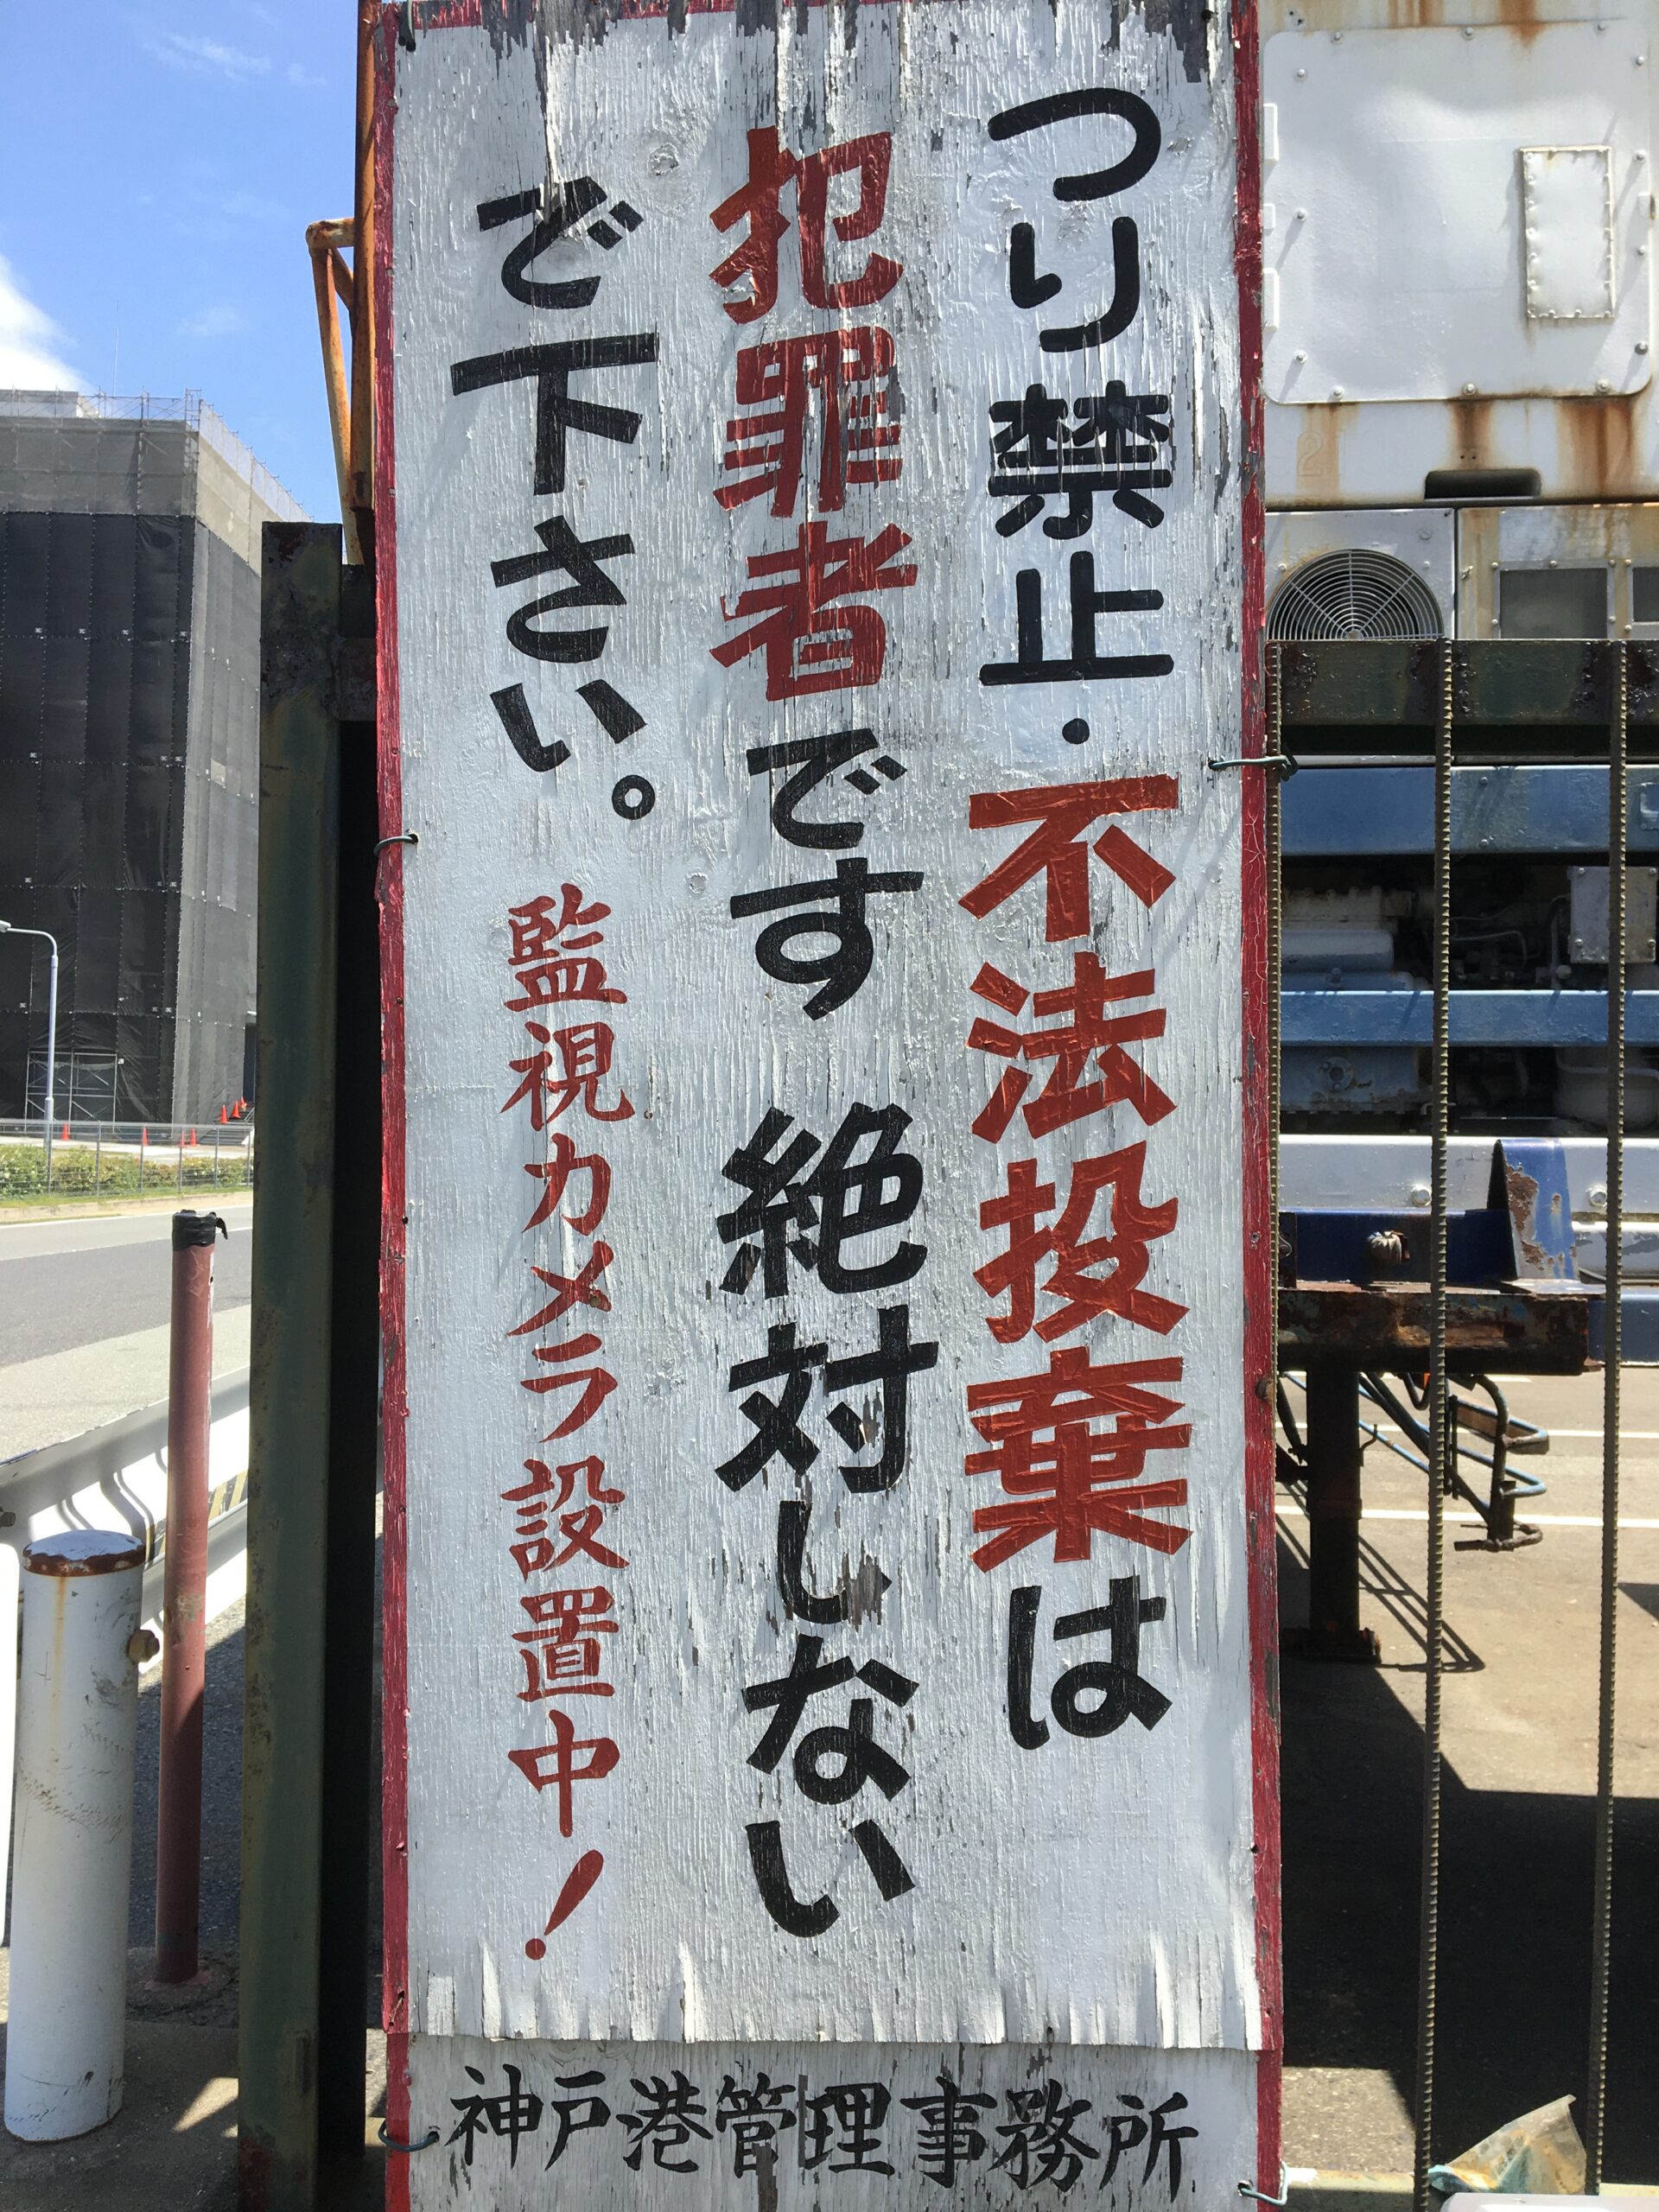 神戸市内は岸壁での釣りは全面禁止 これは 条例違反 です